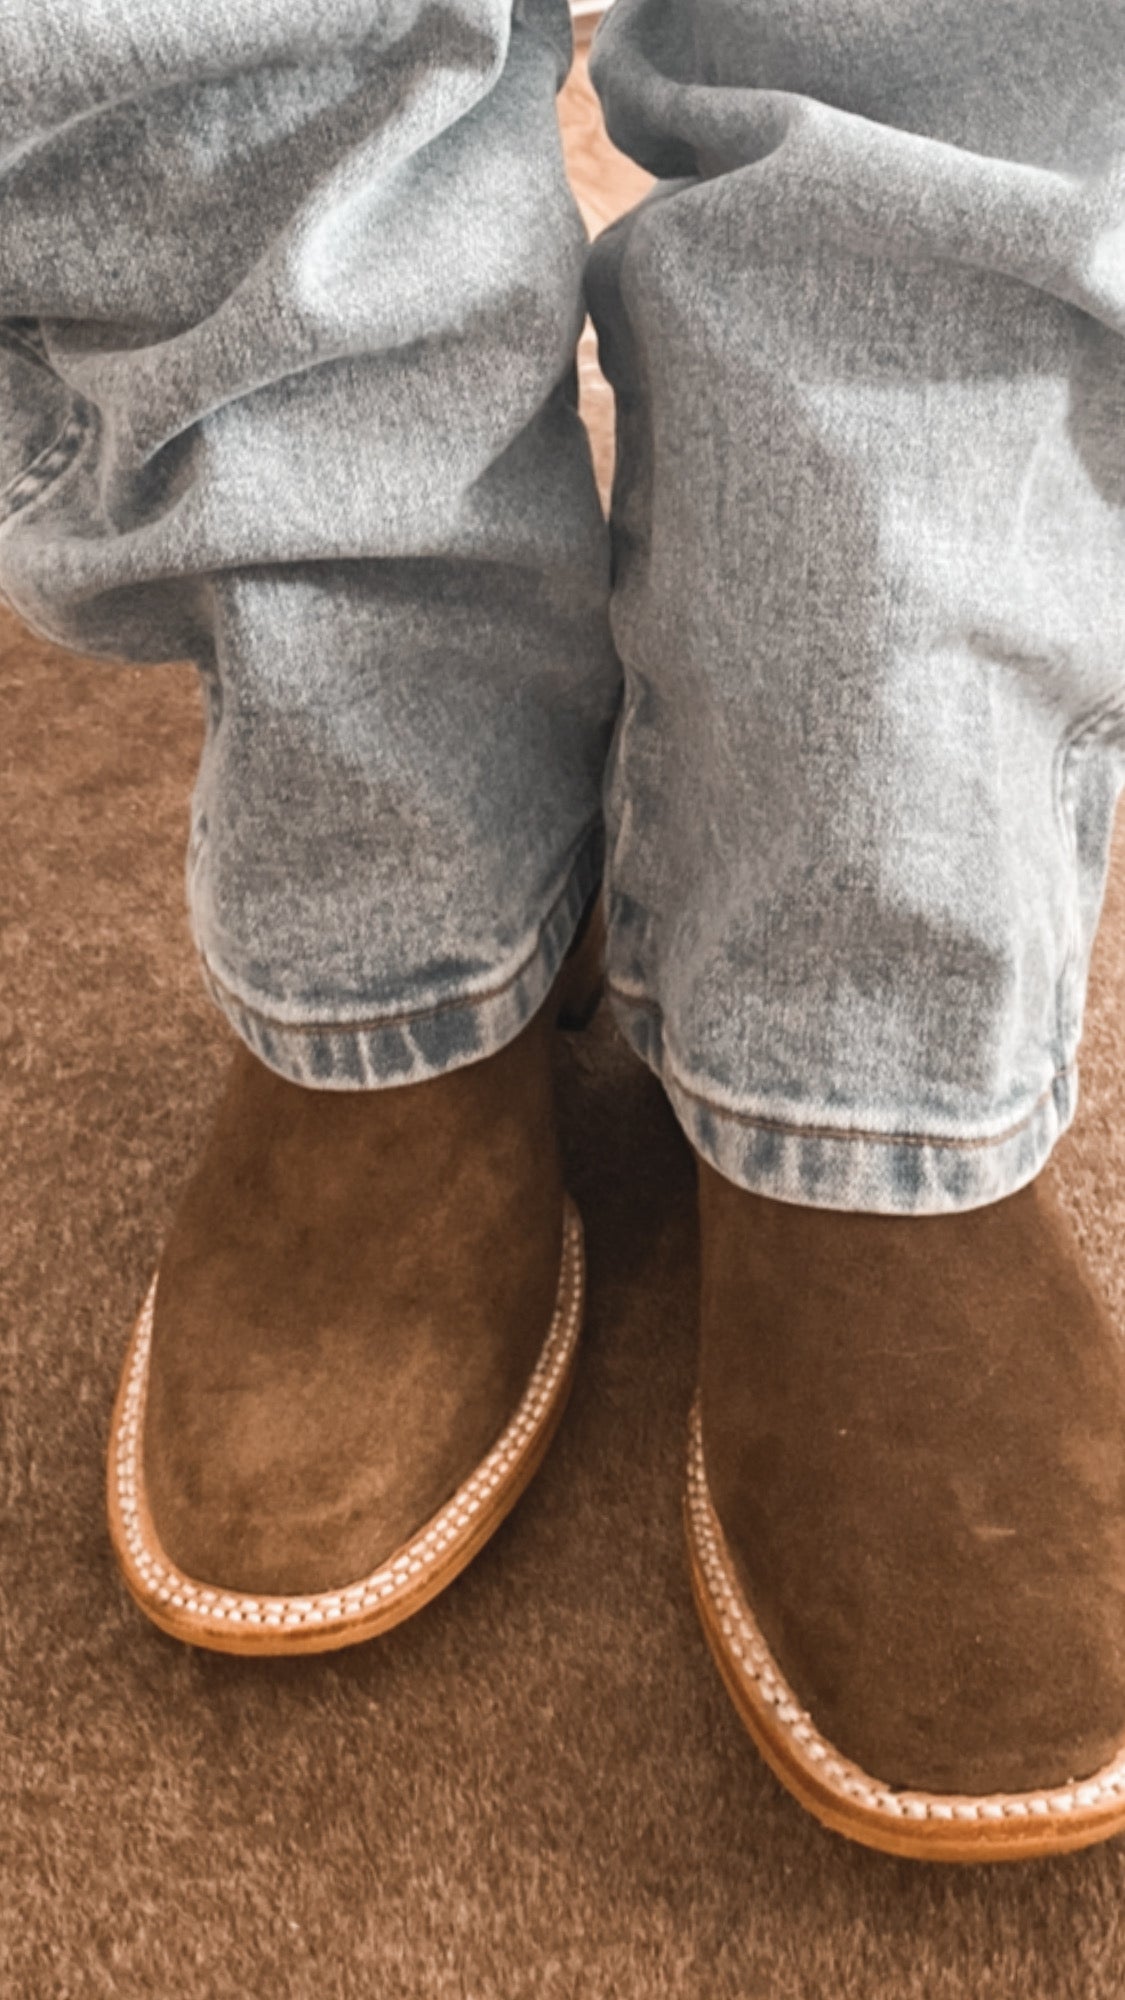 Size 5 (22cm) “Stumps” Rancherr Cowboy Boot